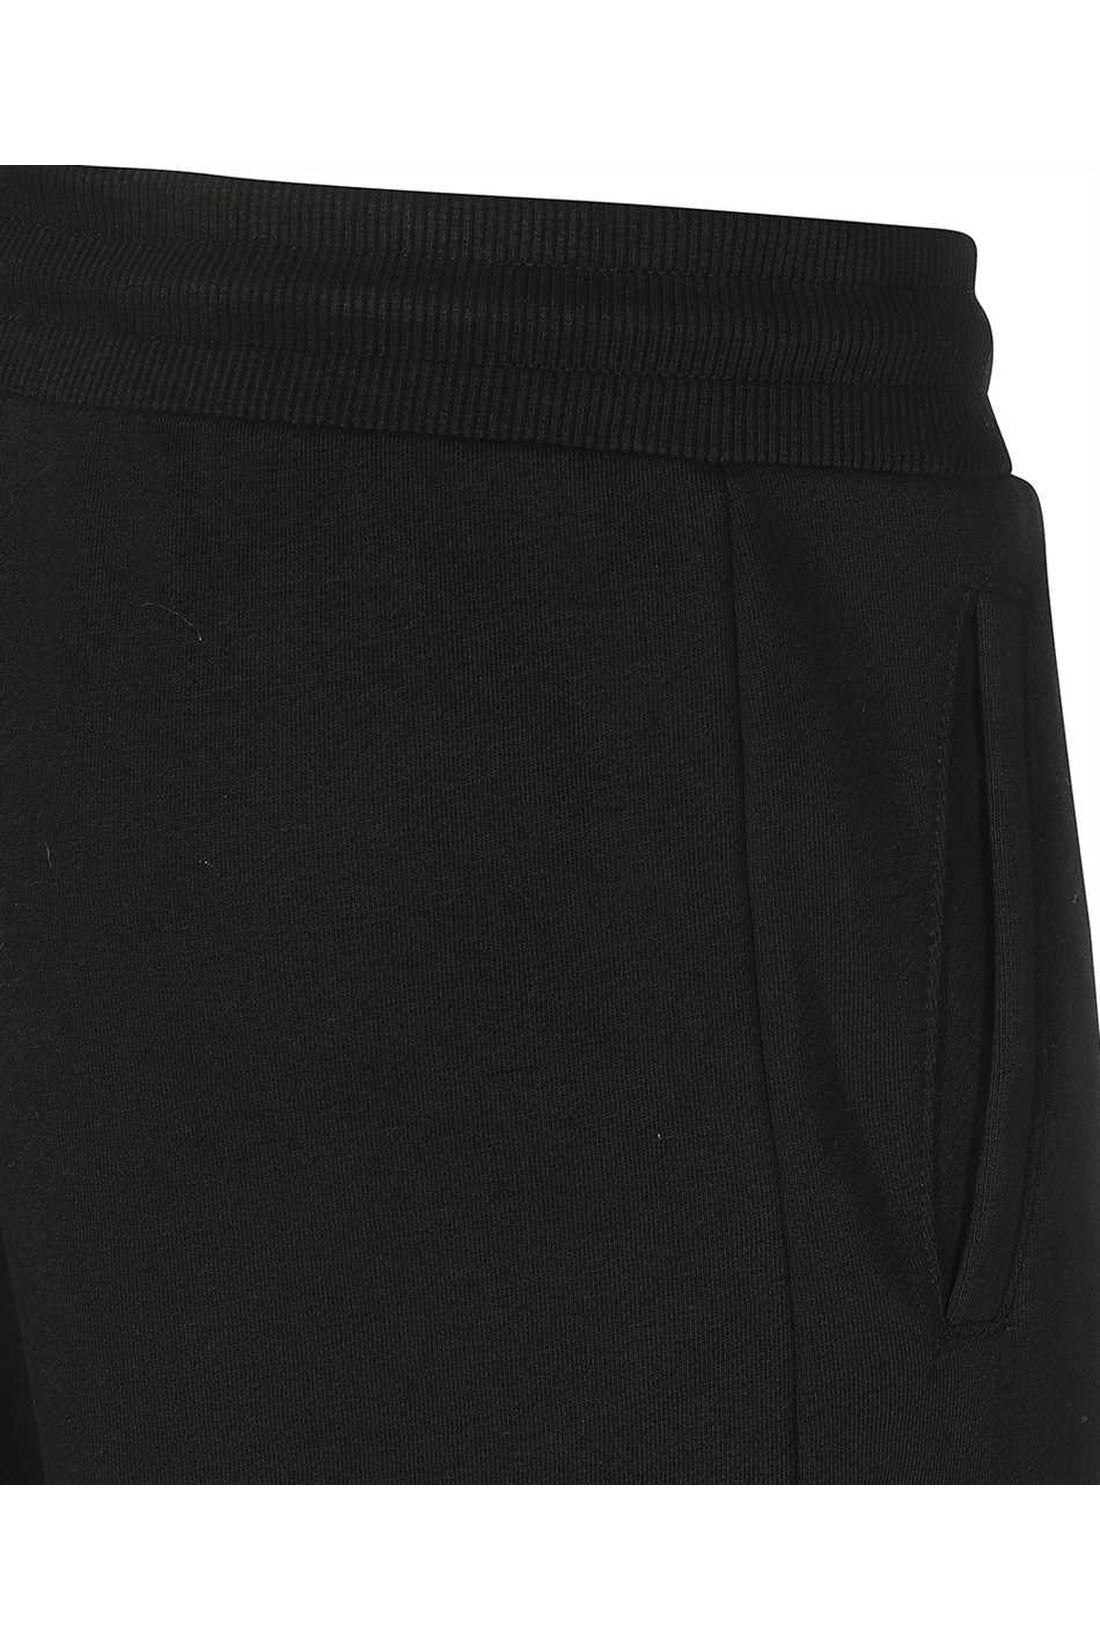 Woolrich-OUTLET-SALE-Jersey sweatpants-ARCHIVIST